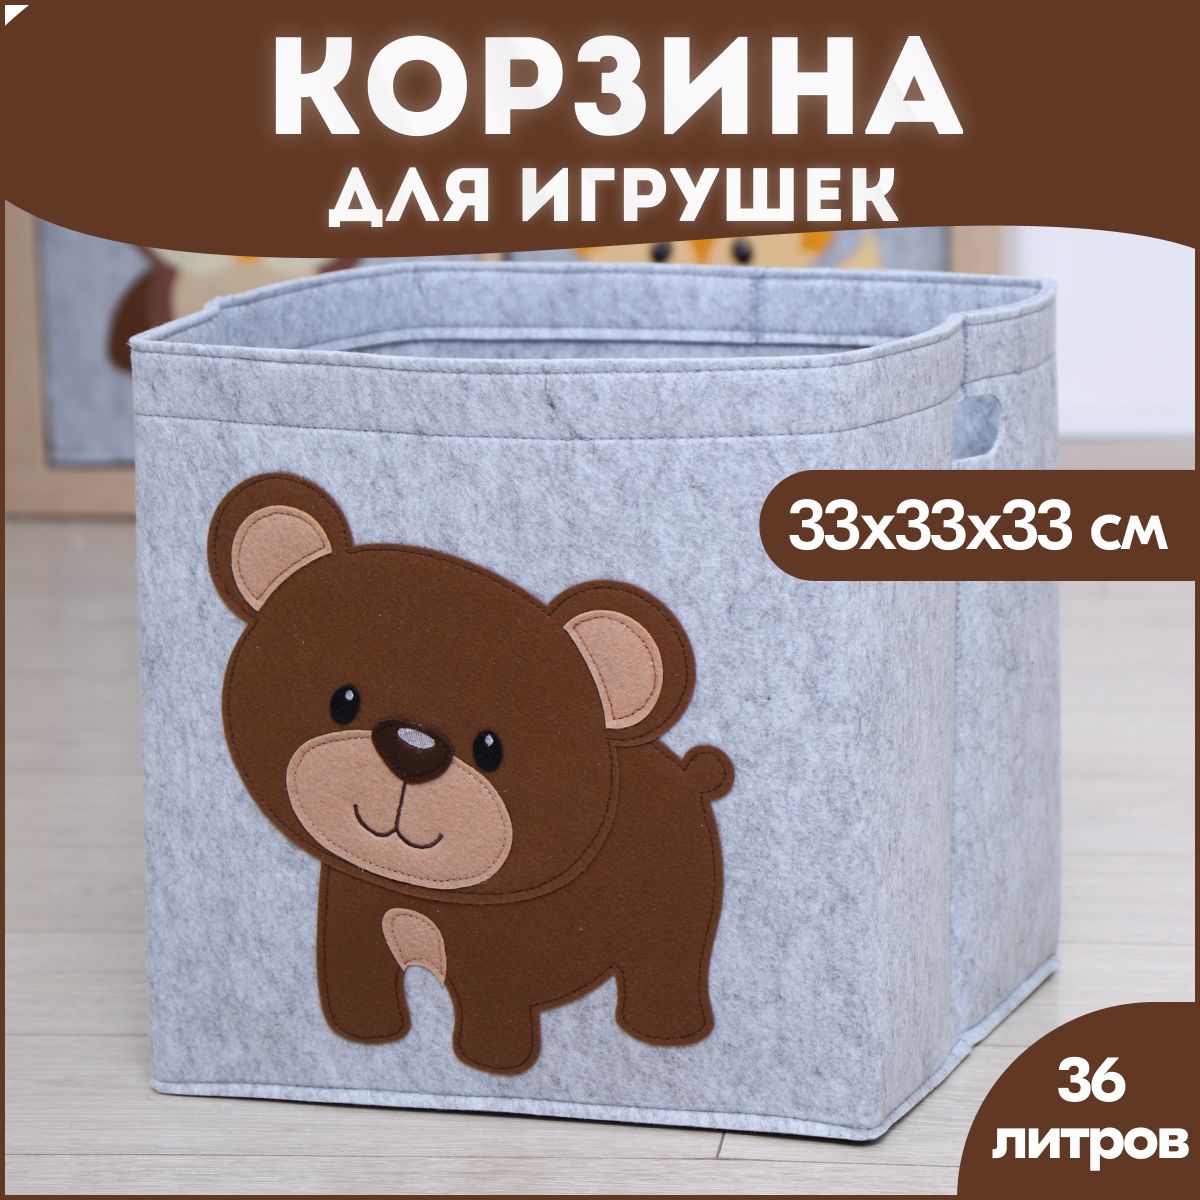 Корзина короб для хранения игрушек HappySava Медведь объем 36 литров размер 33x33x33см